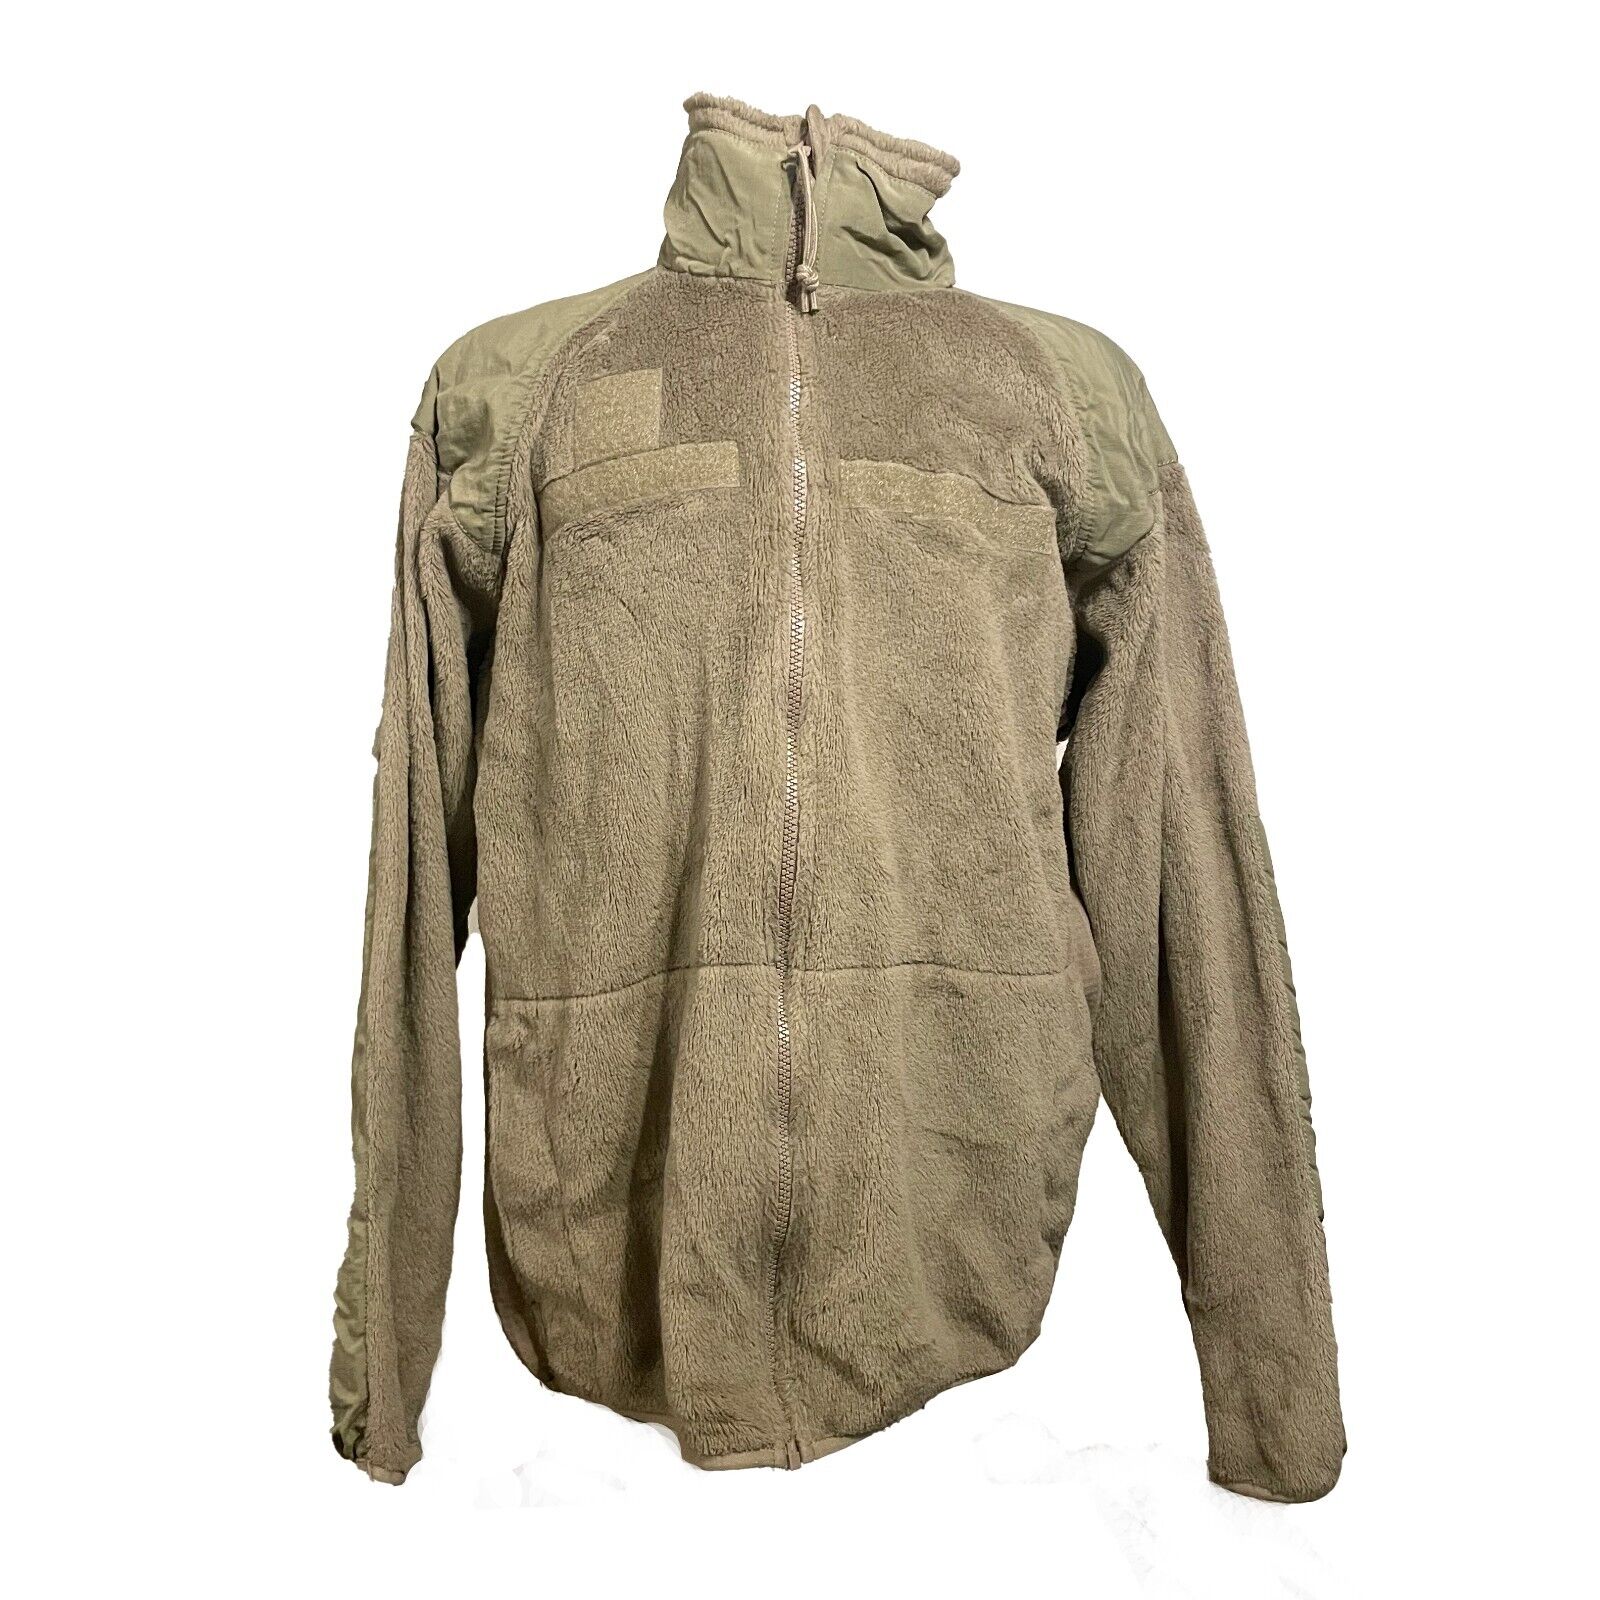 US Military Gen III Polartec 100 Cold Weather Fleece Jacket COYOTE BROWN MEDLong